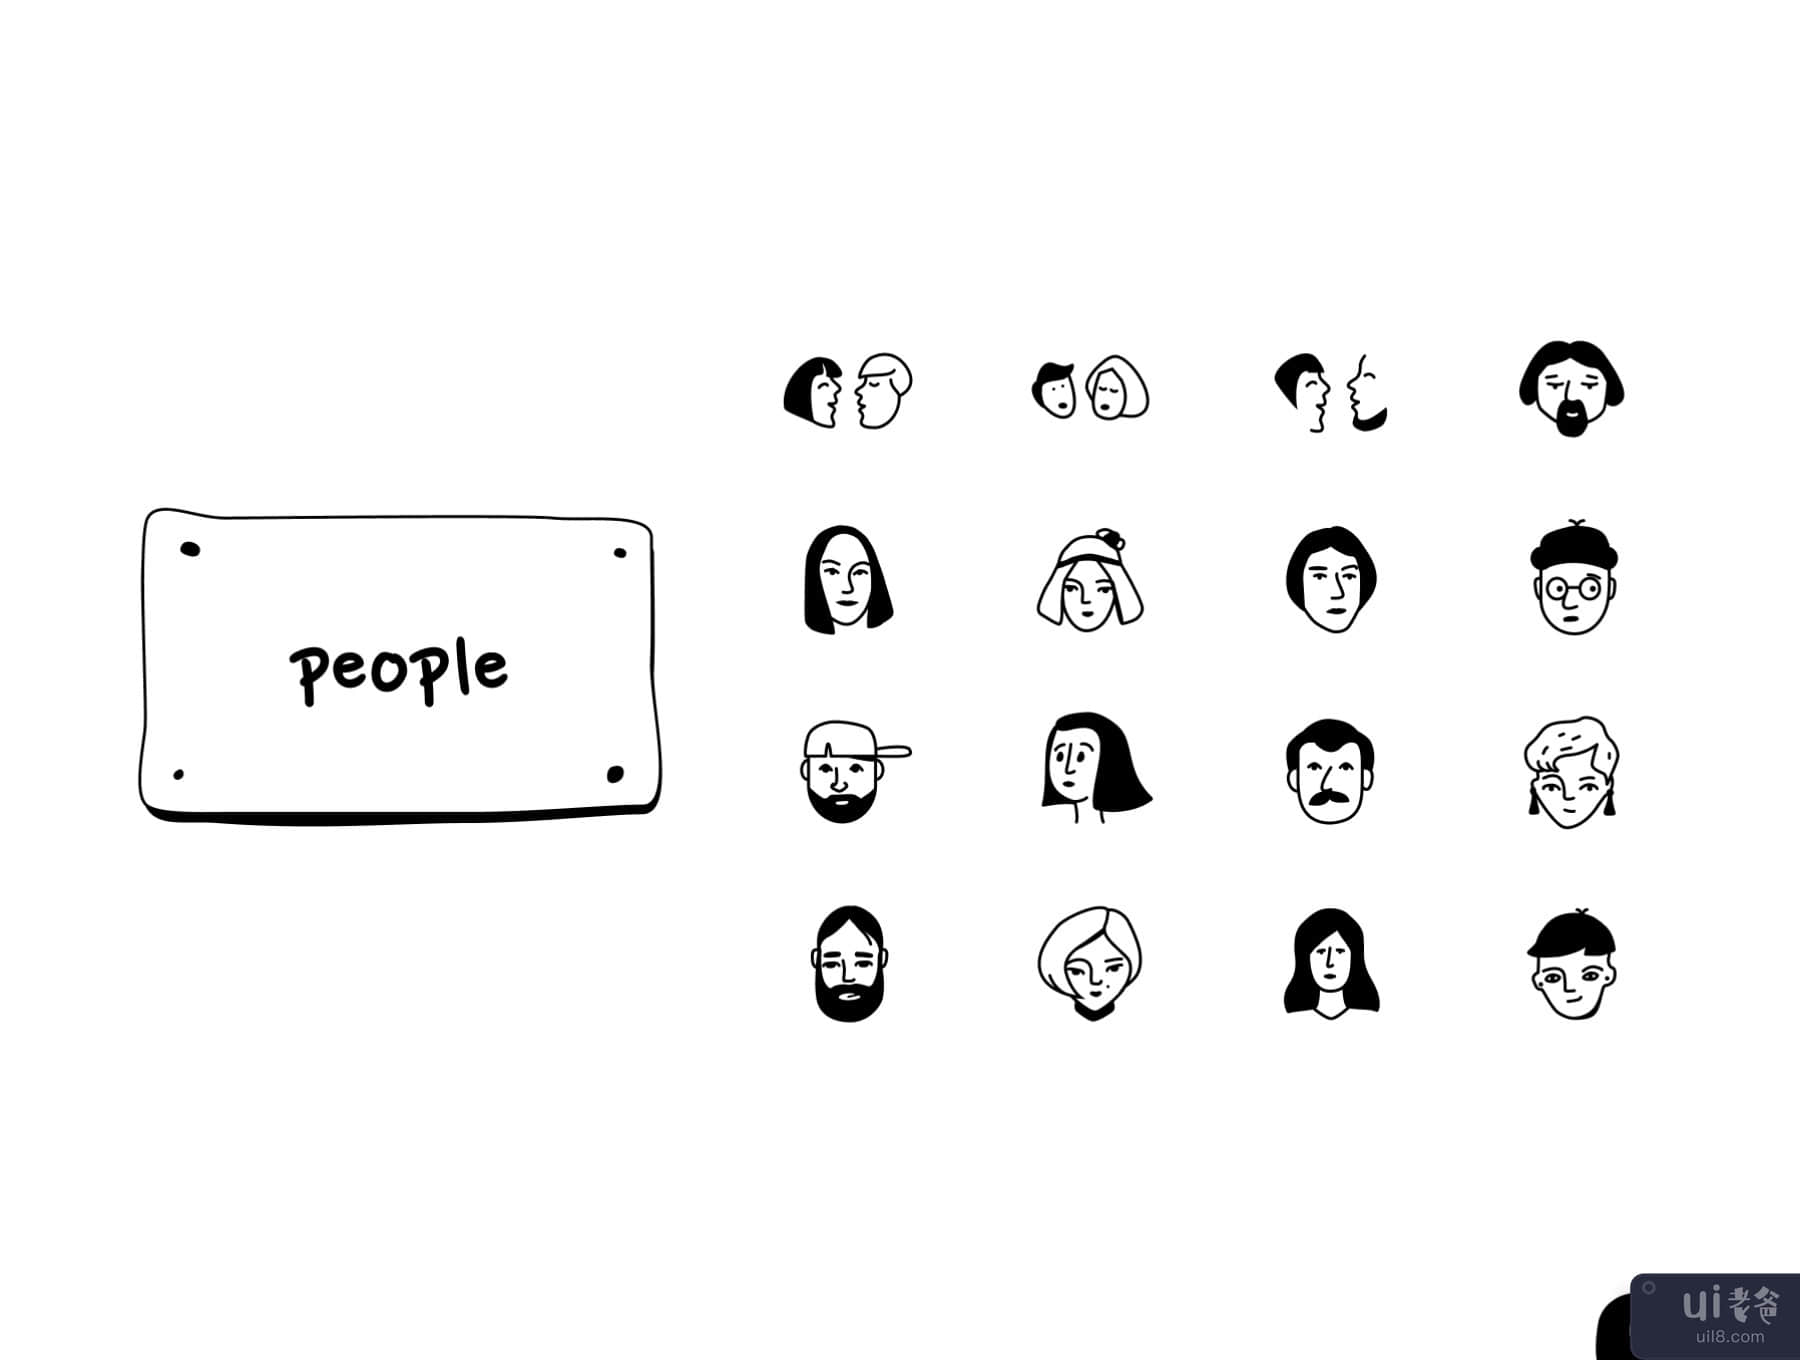 人物 - 染色图标集 (People - Inking Icon Set)插图4